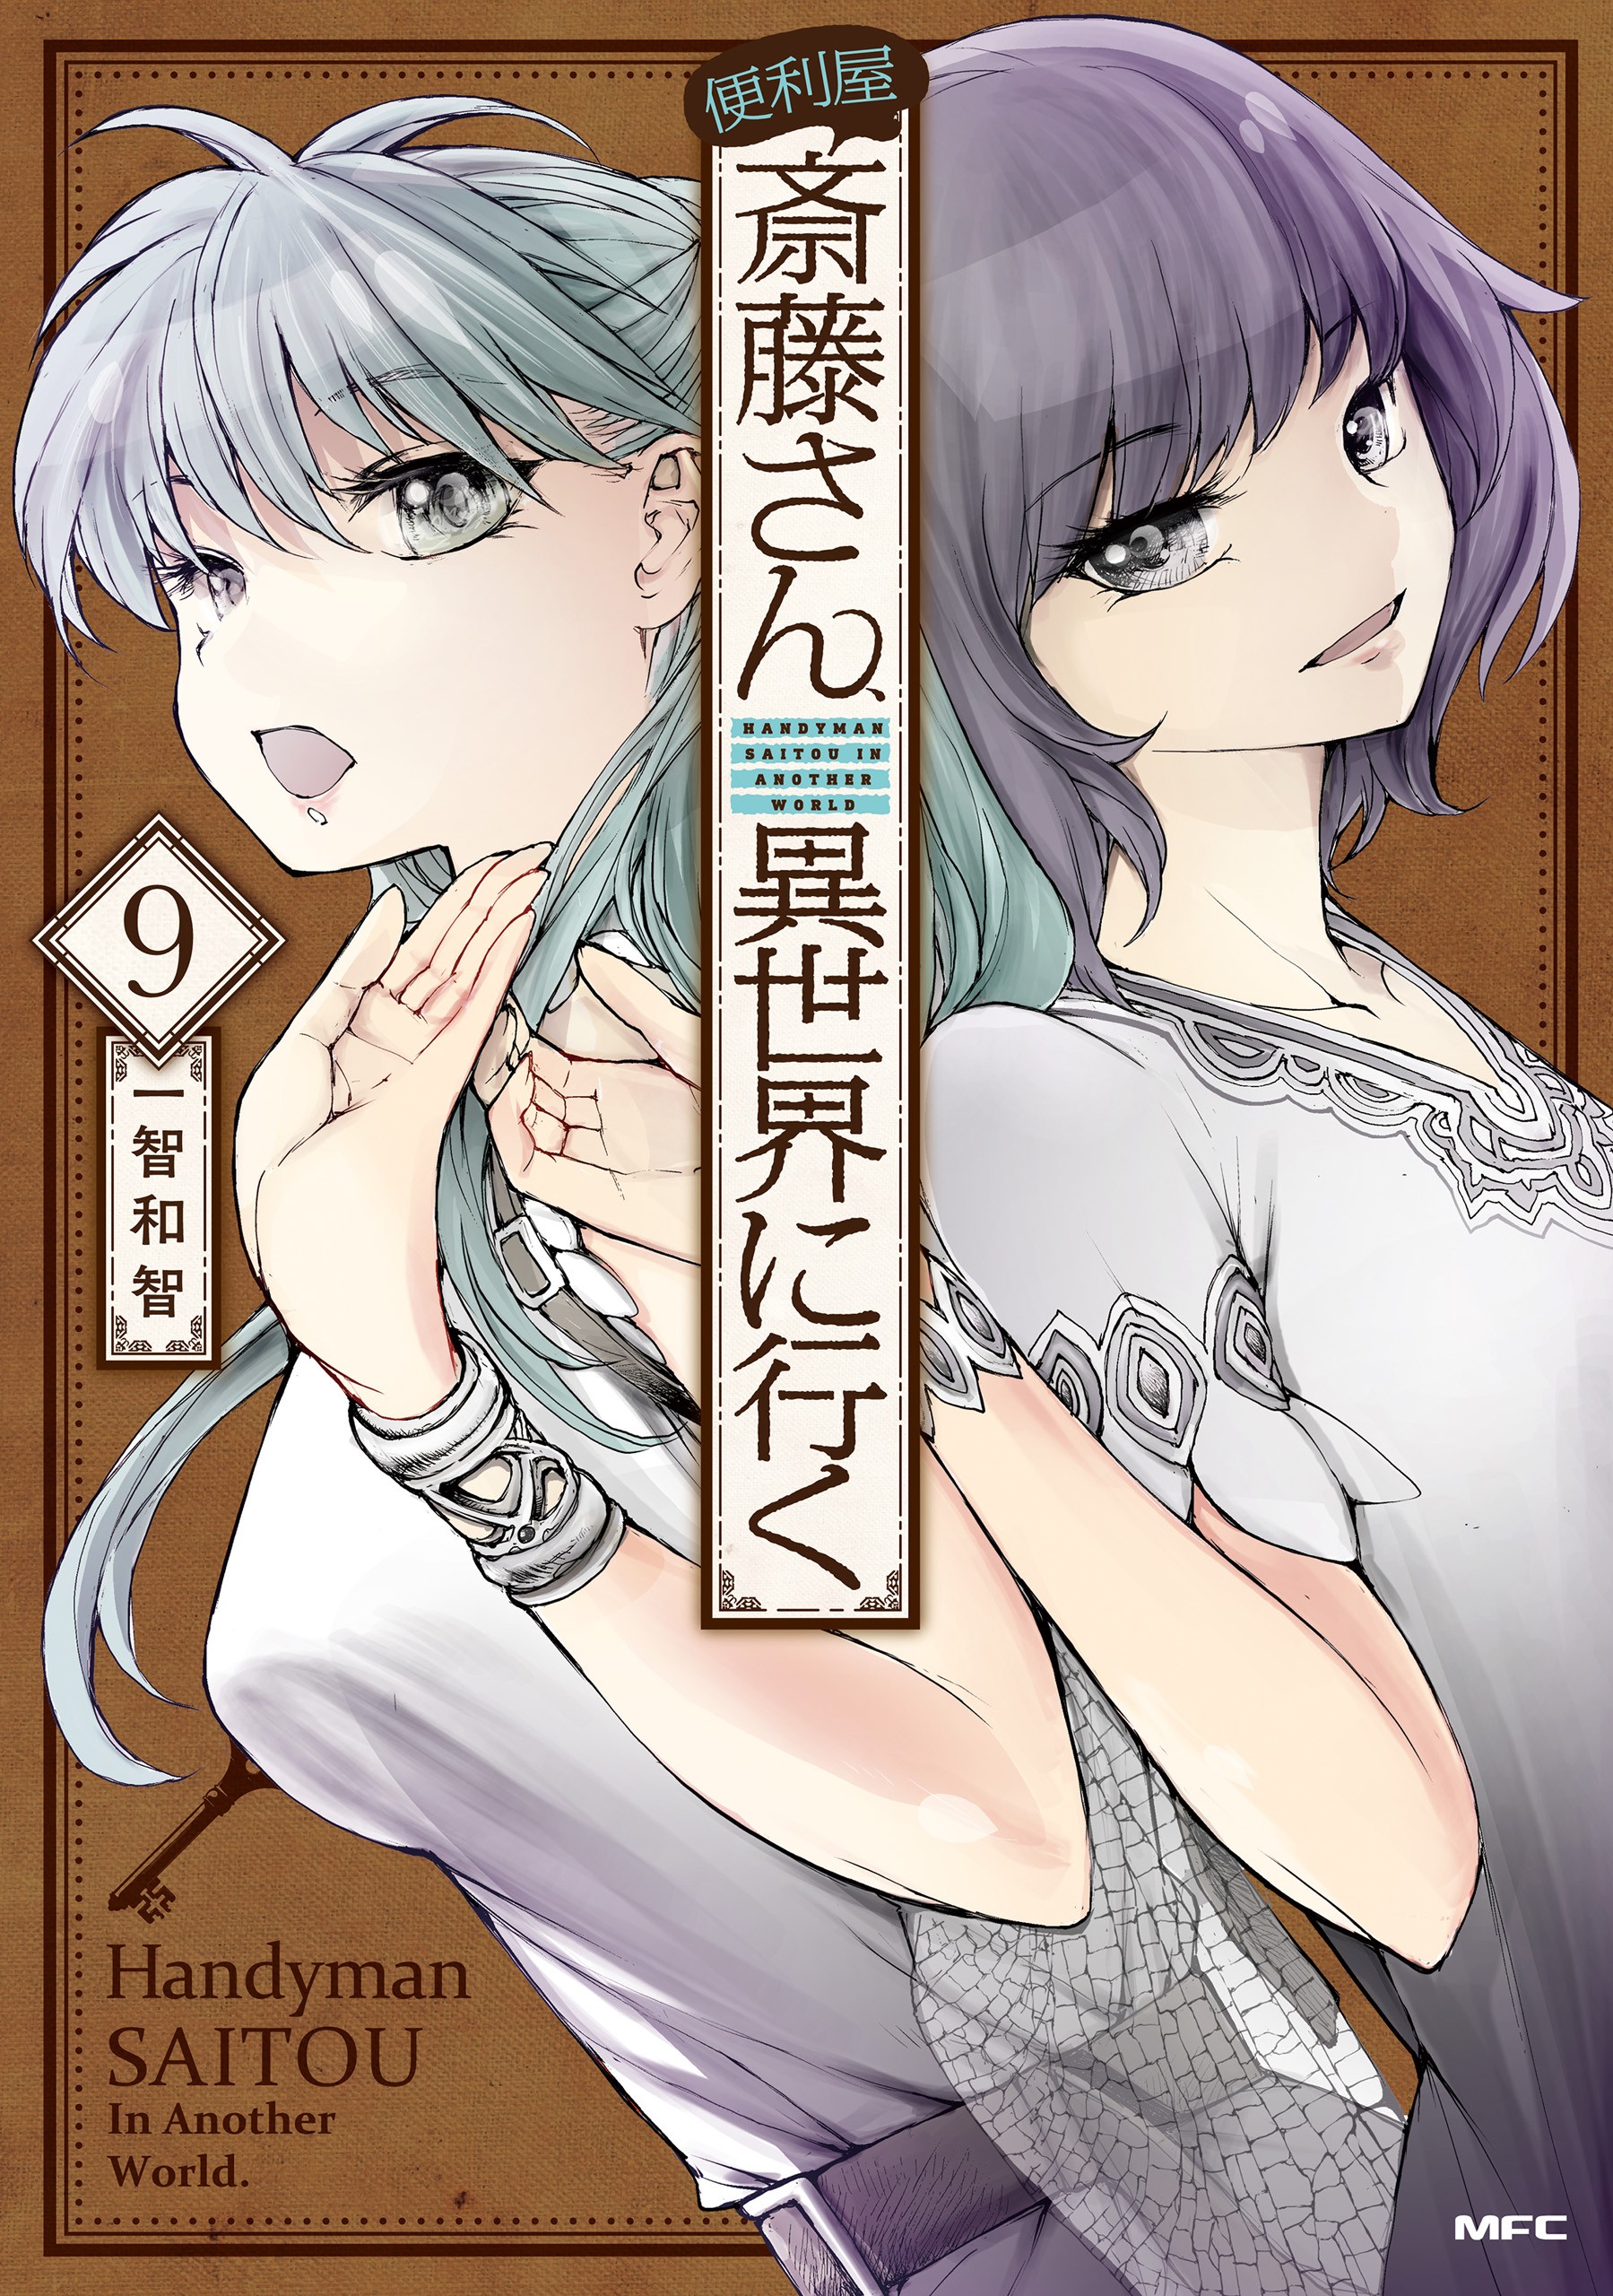 DISC] Benriya Saitou-san, Isekai ni Iku - Chapter 74 : r/manga